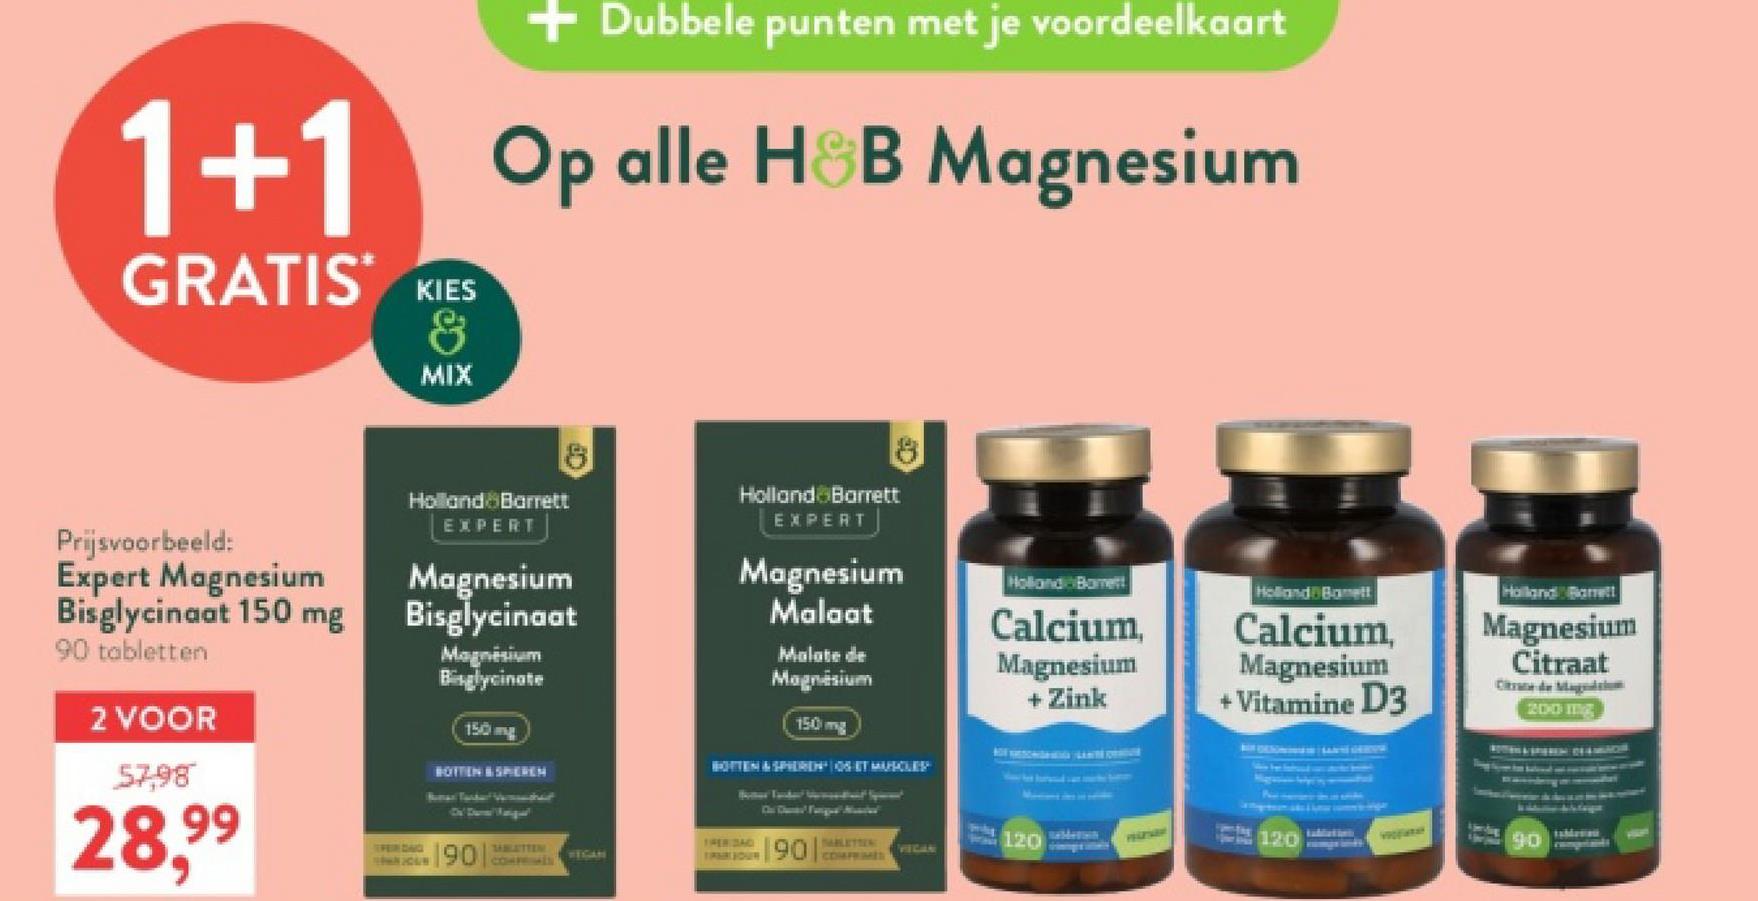 1+1
GRATIS KIES
&
MIX
+ Dubbele punten met je voordeelkaart
Op alle H&B Magnesium
Prijsvoorbeeld:
Expert Magnesium
Bisglycinaat 150 mg
90 tabletten
2 VOOR
57,98
28,99
Holland Barrett
EXPERT
Magnesium
Bisglycinaat
Magnesium
Bisglycinate
150mg
BOTTEN & SPIEREN
Holland Barett
EXPERT
Magnesium
Malaat
Malate de
Magnesium
150 mg
BOTTEN & SPIEREN SET MUSCLEP
Holland Borett
Holland Banett
Calcium,
Magnesium
+ Zink
PERIDAD
JOHN YOUN
190 CO
SABLATTEN
VEGAN
90
TABLETTEN:
120
VECAN
Calcium,
Magnesium
+ Vitamine D3
Holland Barrett
Magnesium
Citraat
Categ
200 mg
PELZARY
120
90